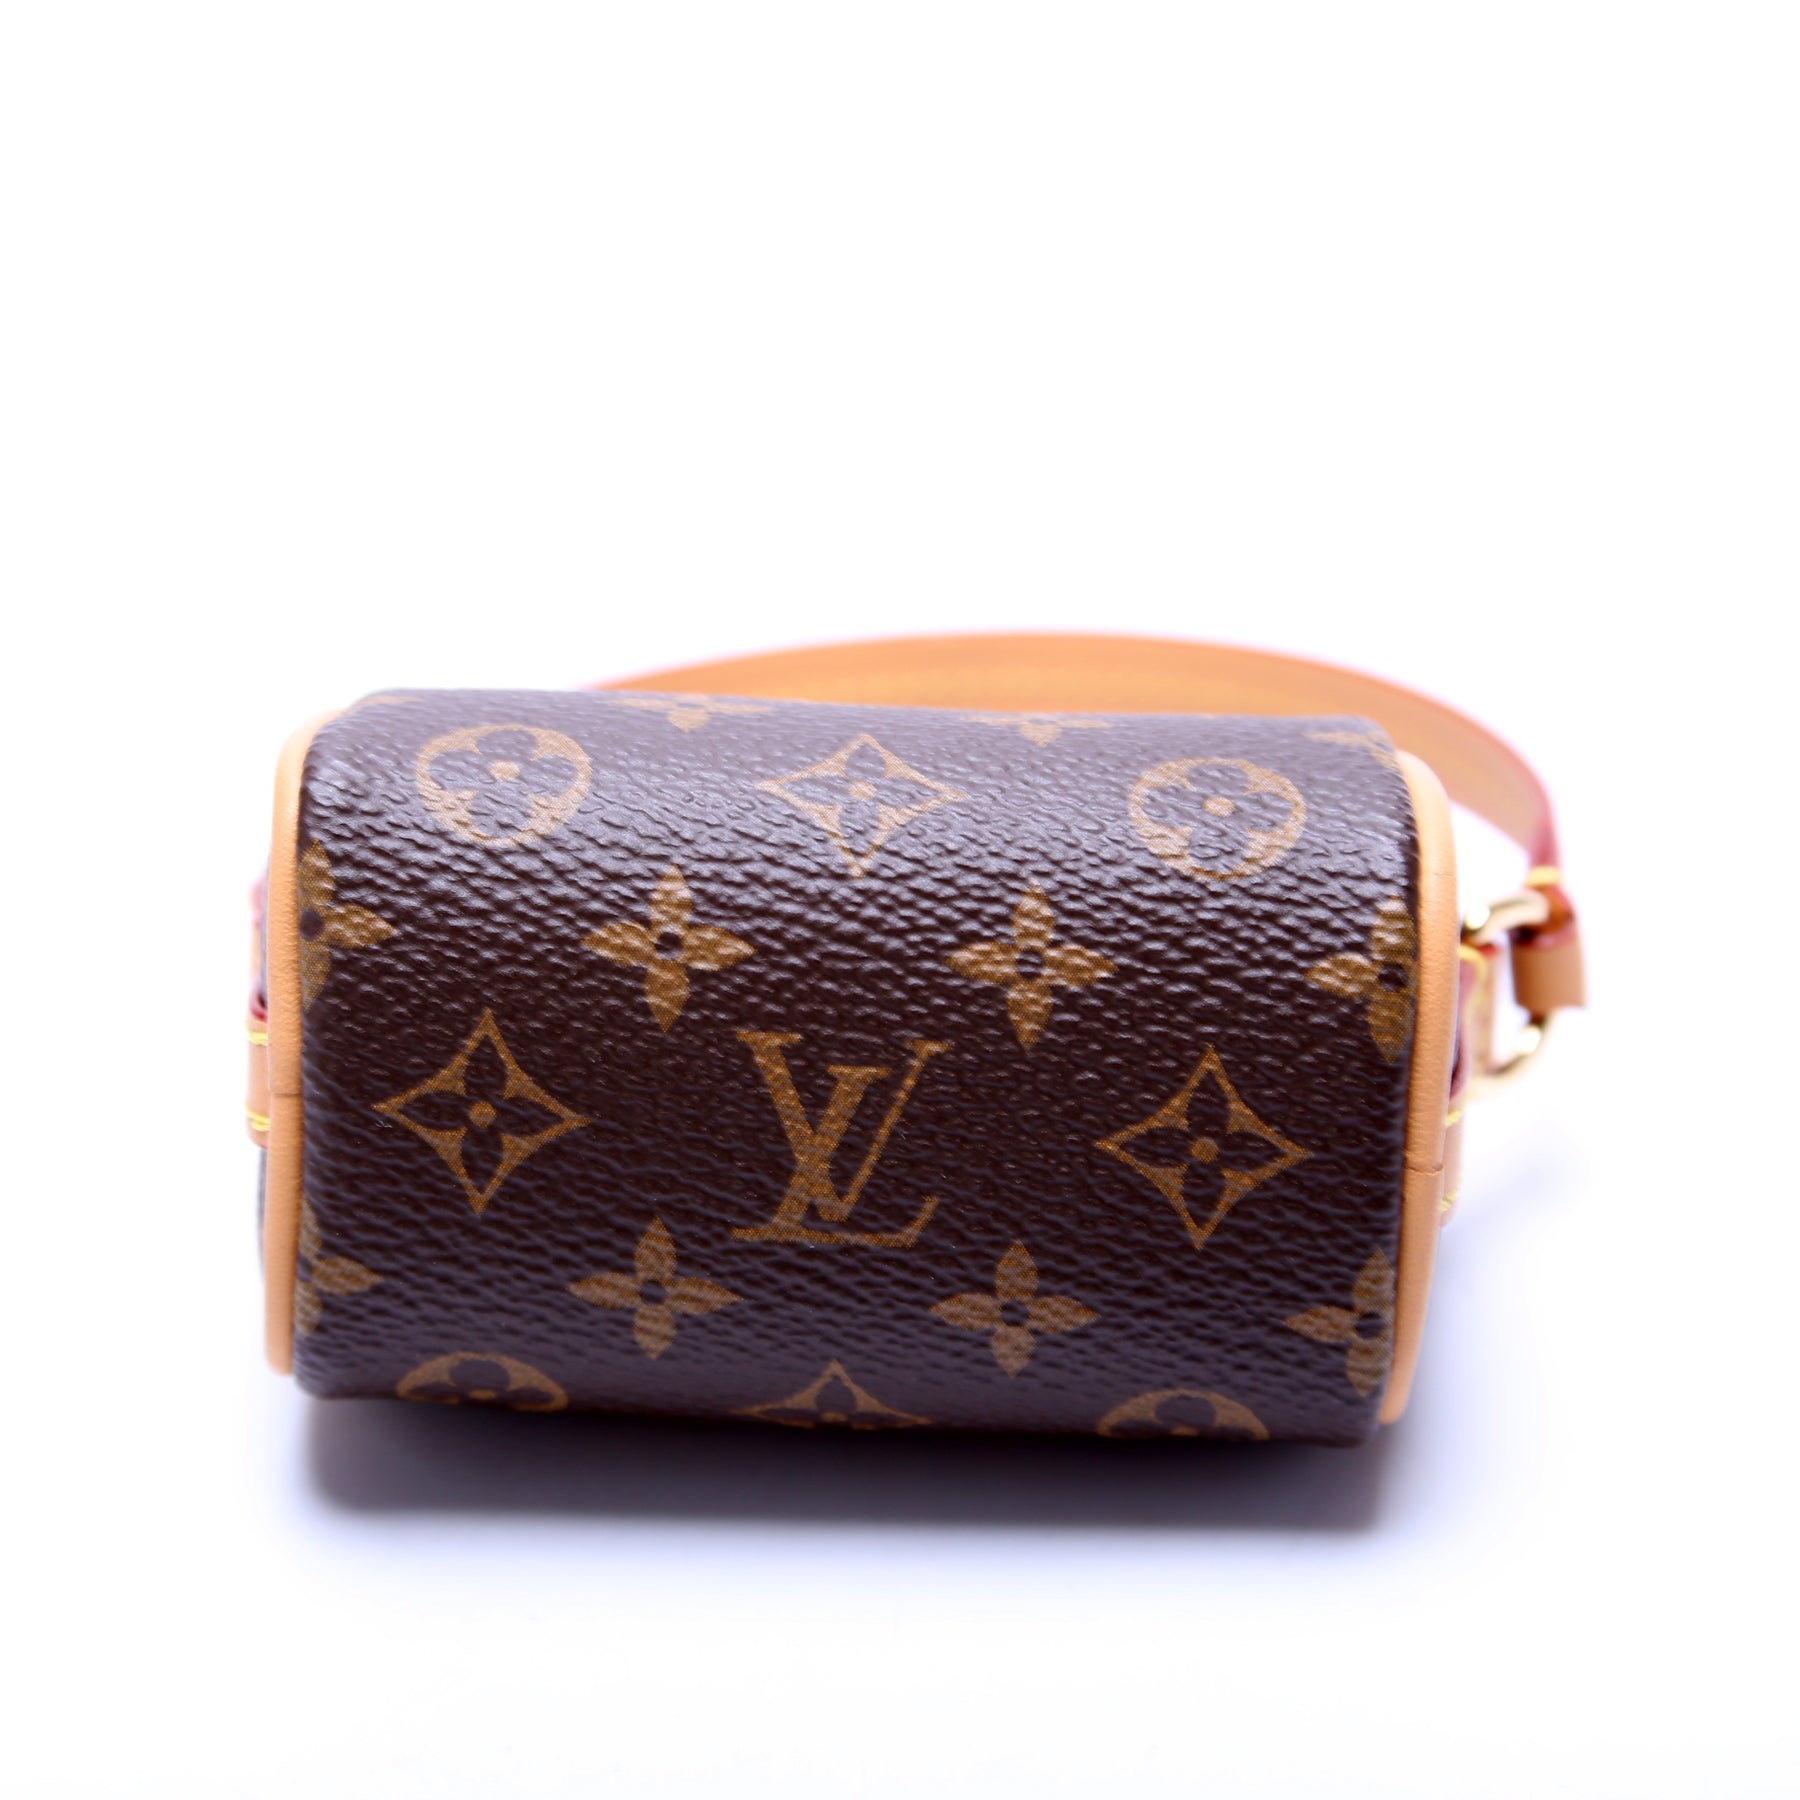 Louis Vuitton Brown, Pattern Print 2021 Monogram Micro Speedy Bag Charm